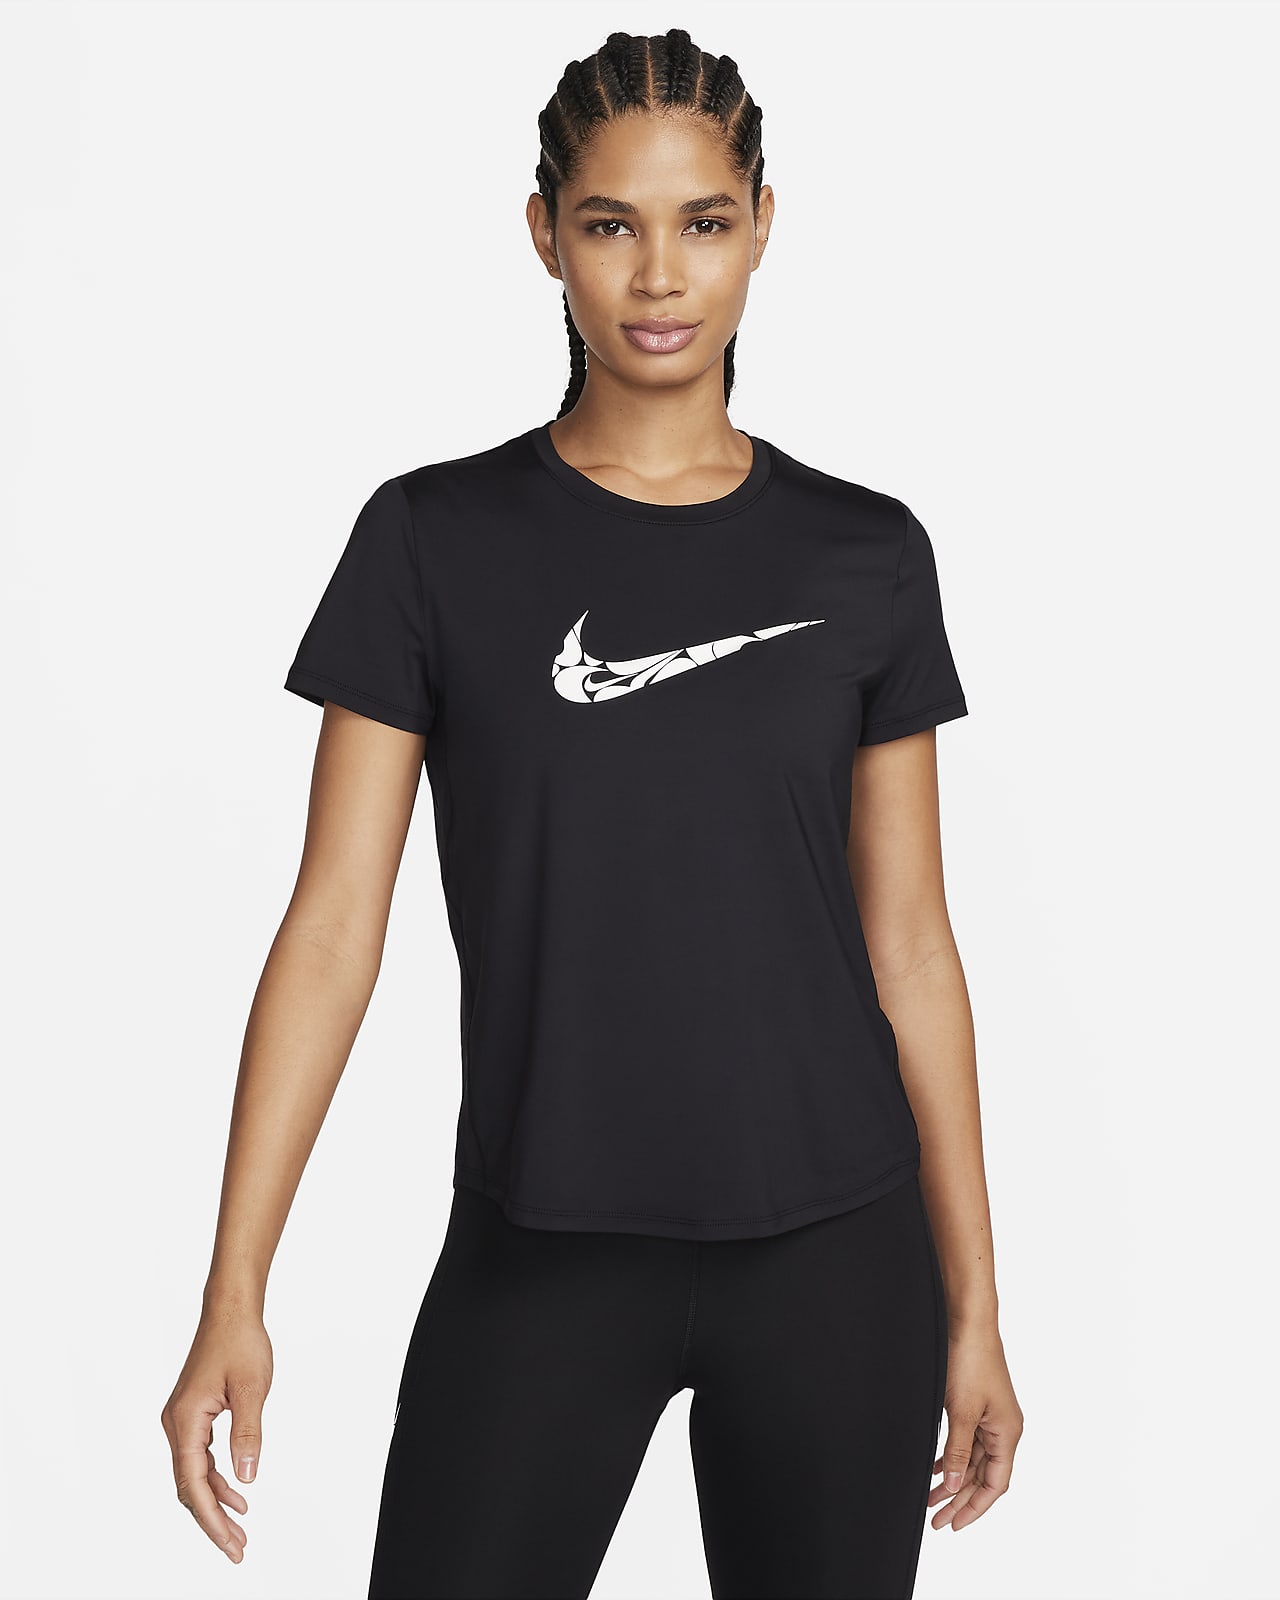 Nike One Swoosh Dri-FIT rövid ujjú női futófelső